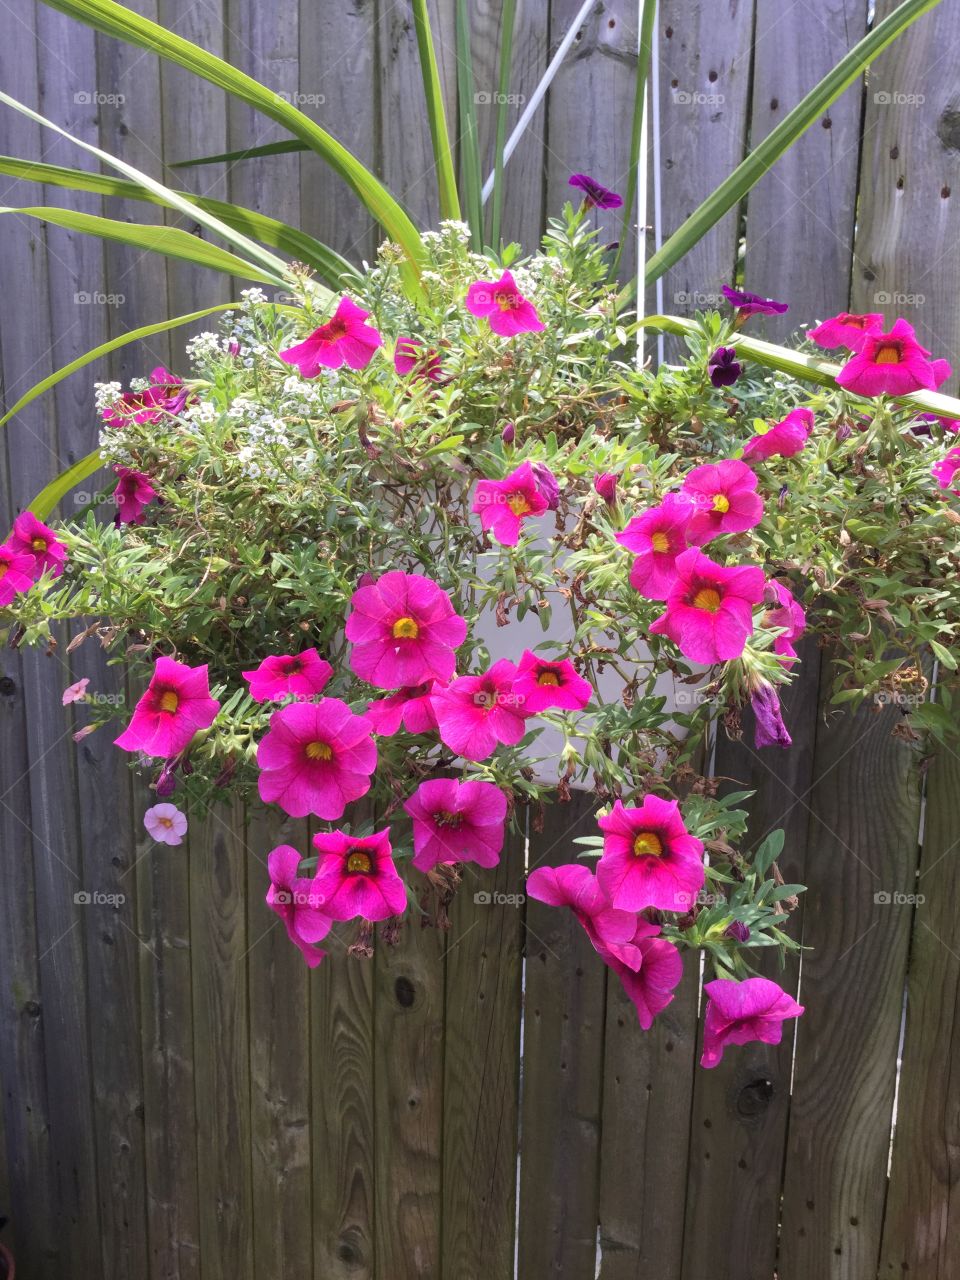 Hanging flower basket 